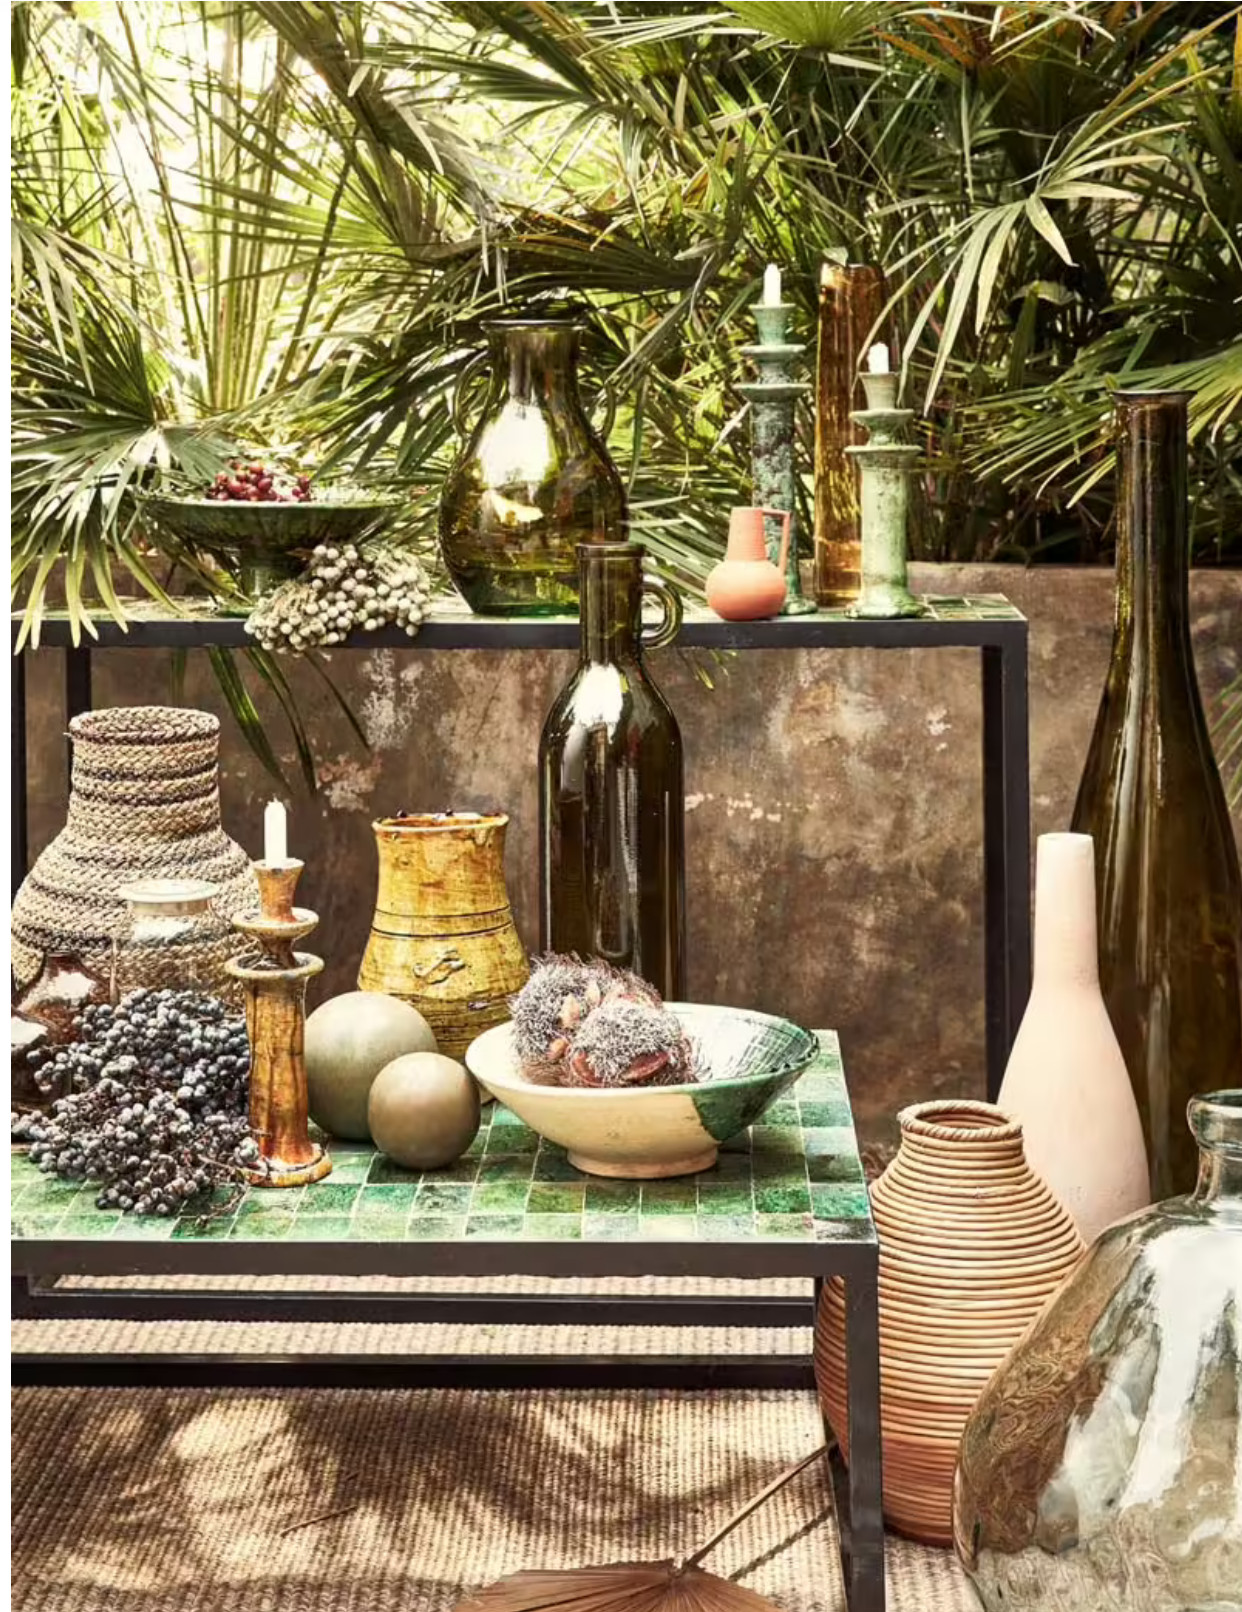 mobilier et poteries Maroc